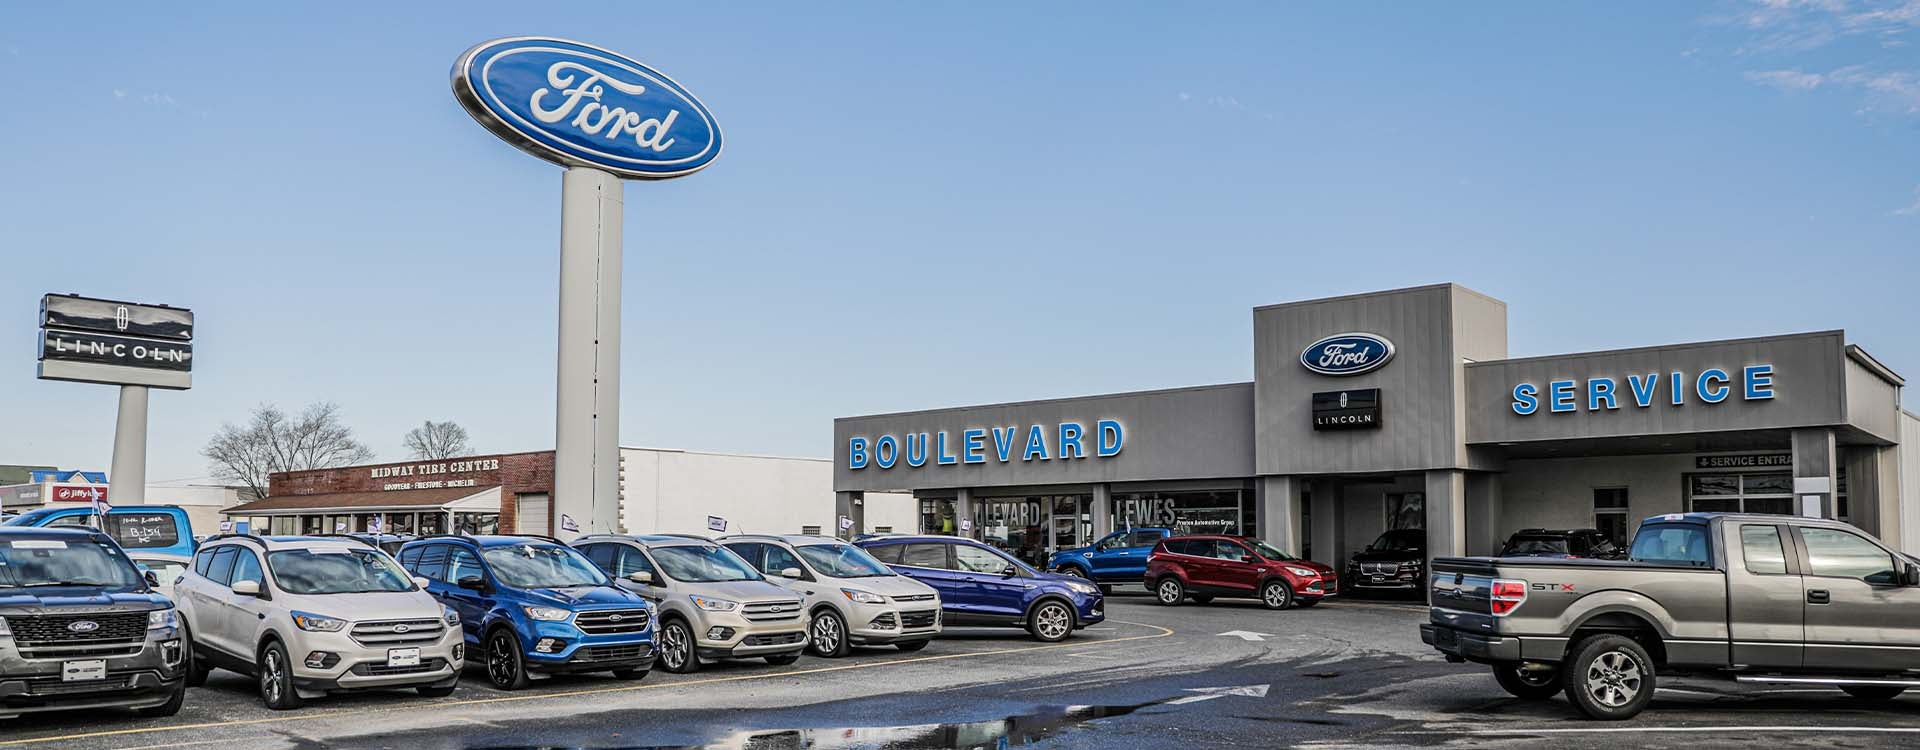 Ford dealer Lewes Delaware
